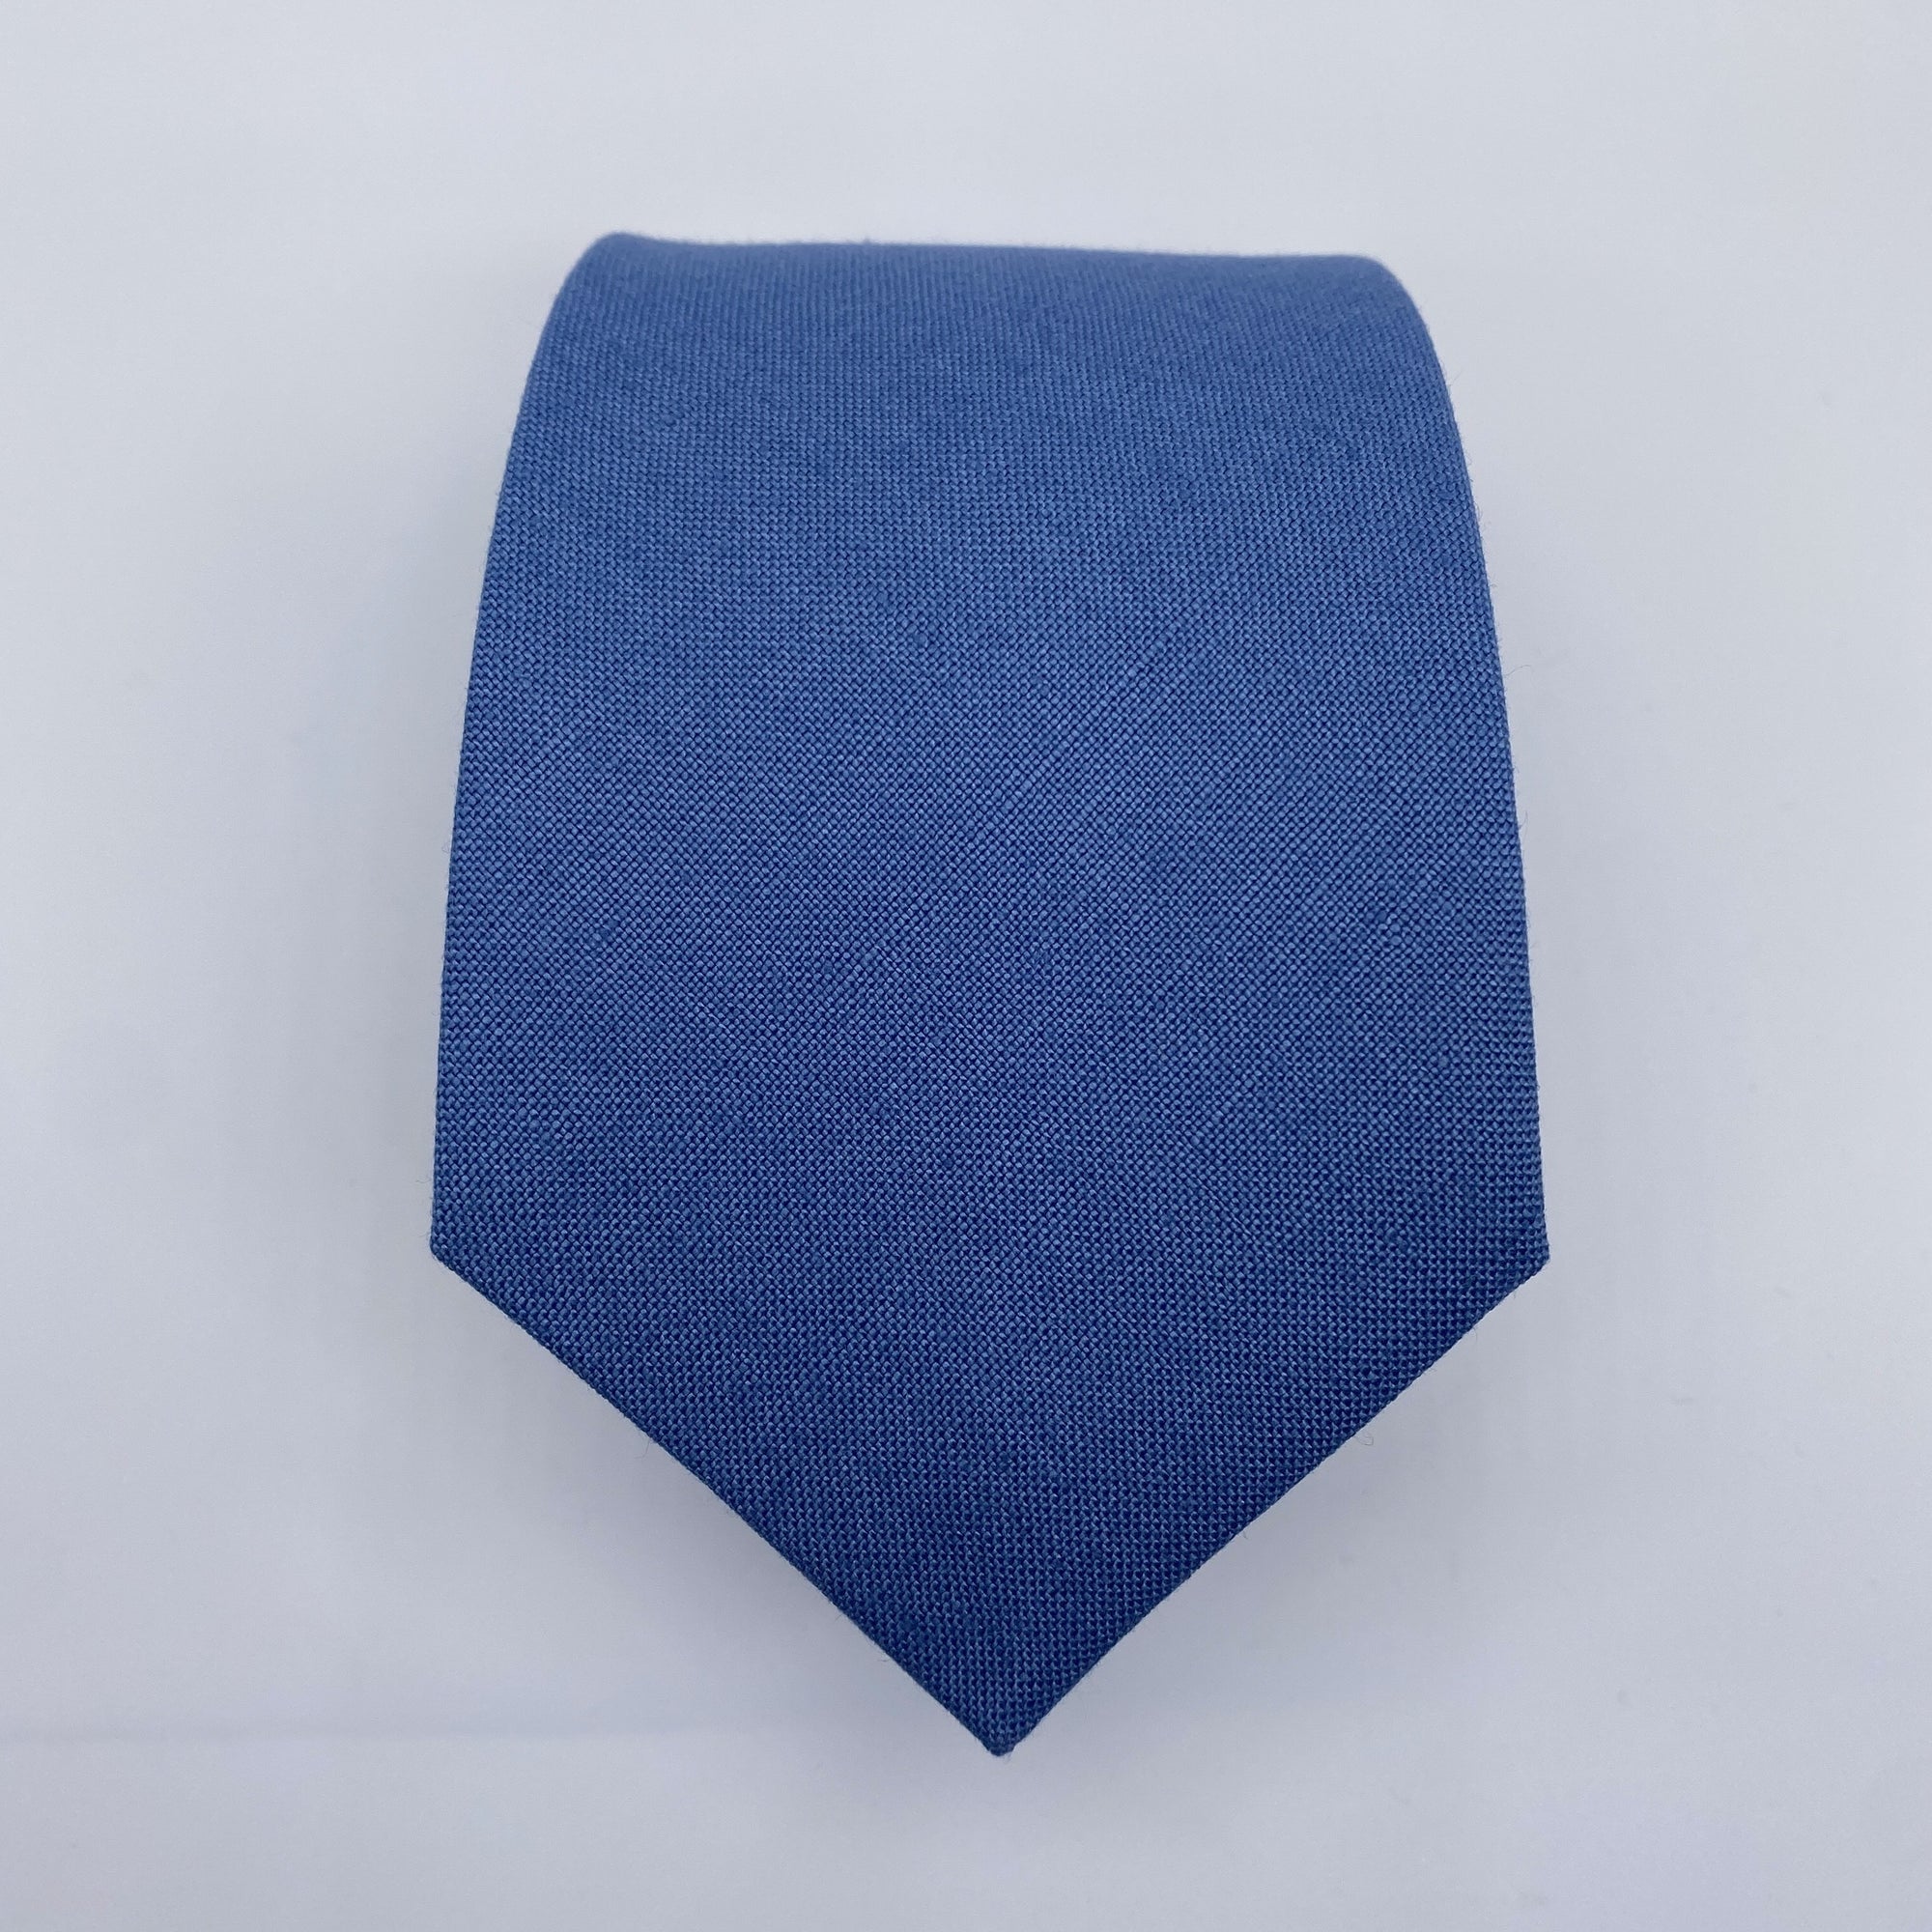 Slate Blue Tie in Irish Linen